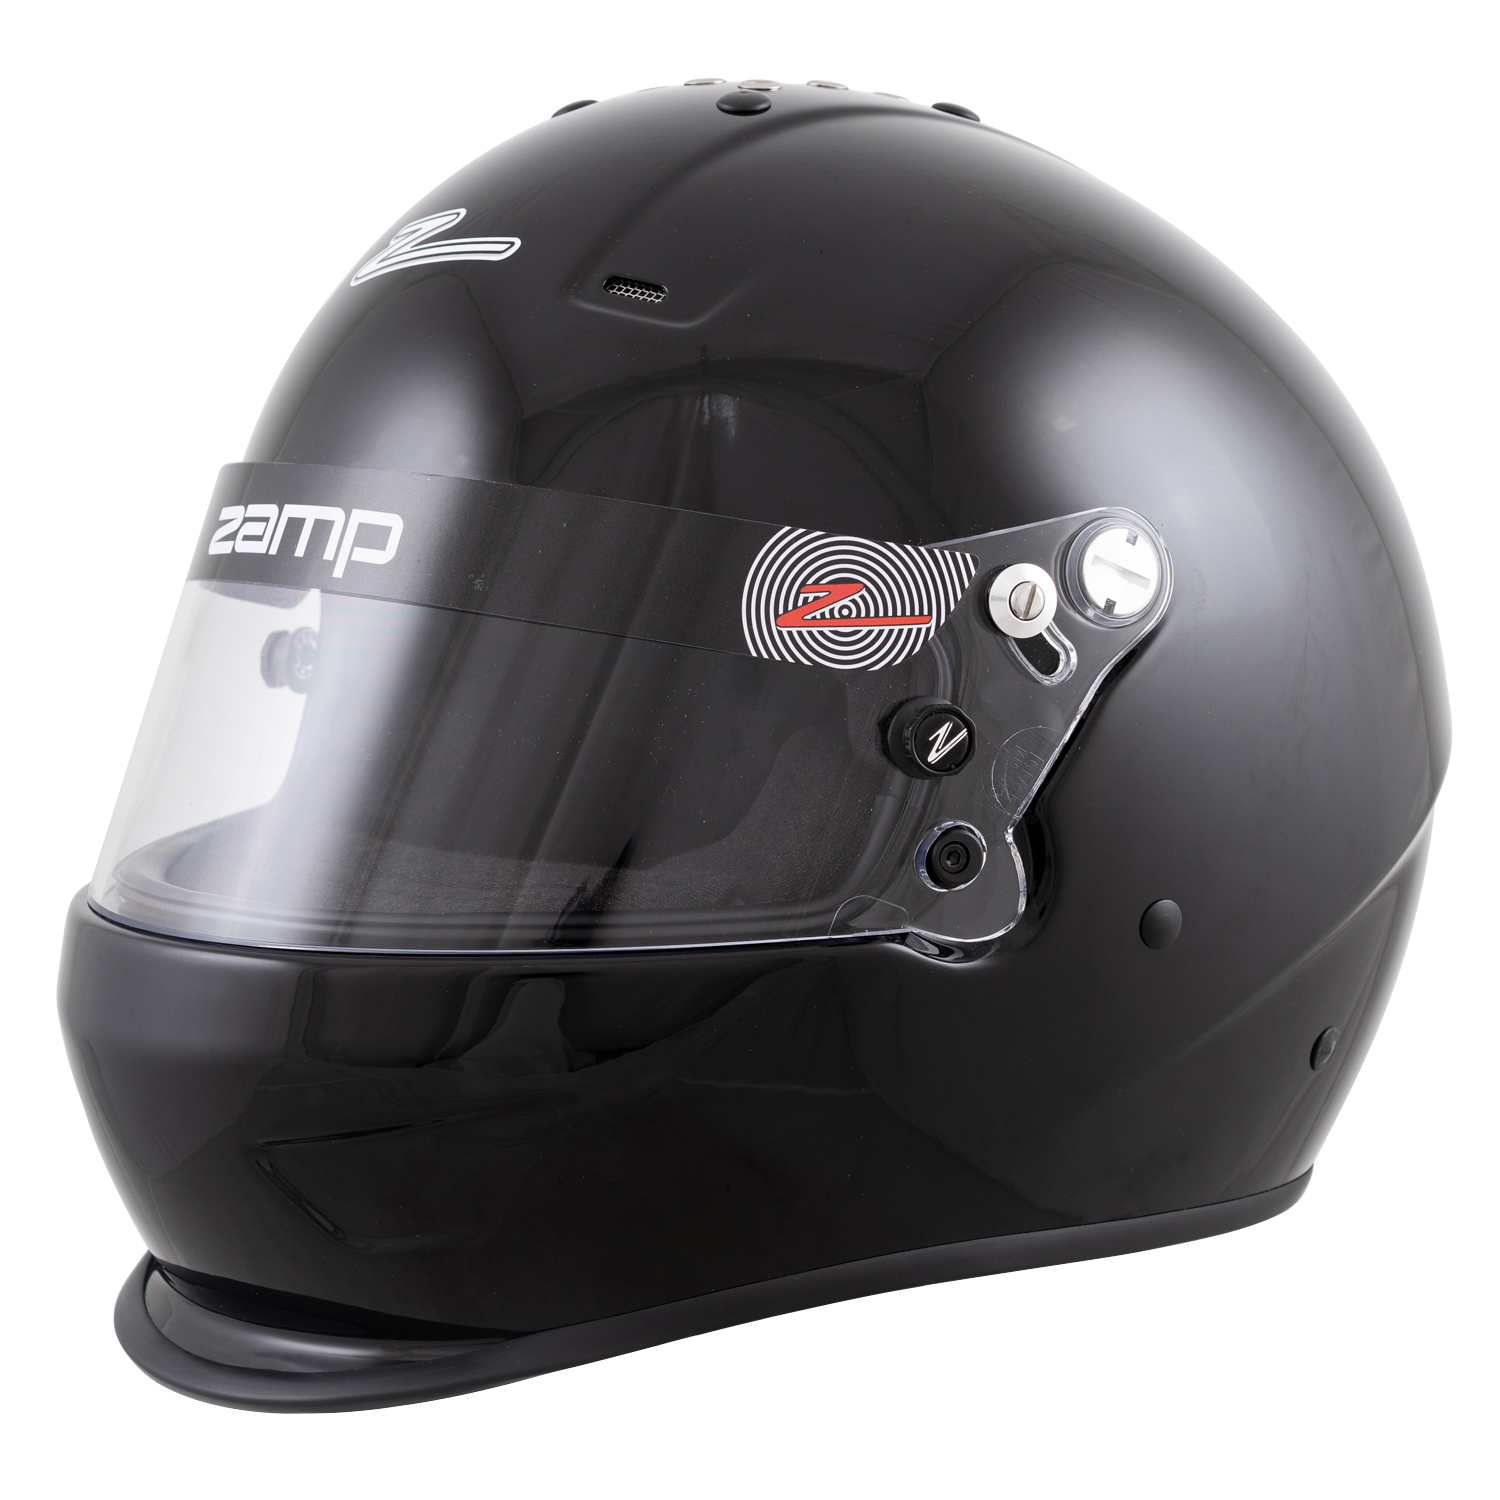 Z20 Shield Retention Kit RZ-58/RZ-40/RZ-44 Fits all RZ Series Helmets ZAMP